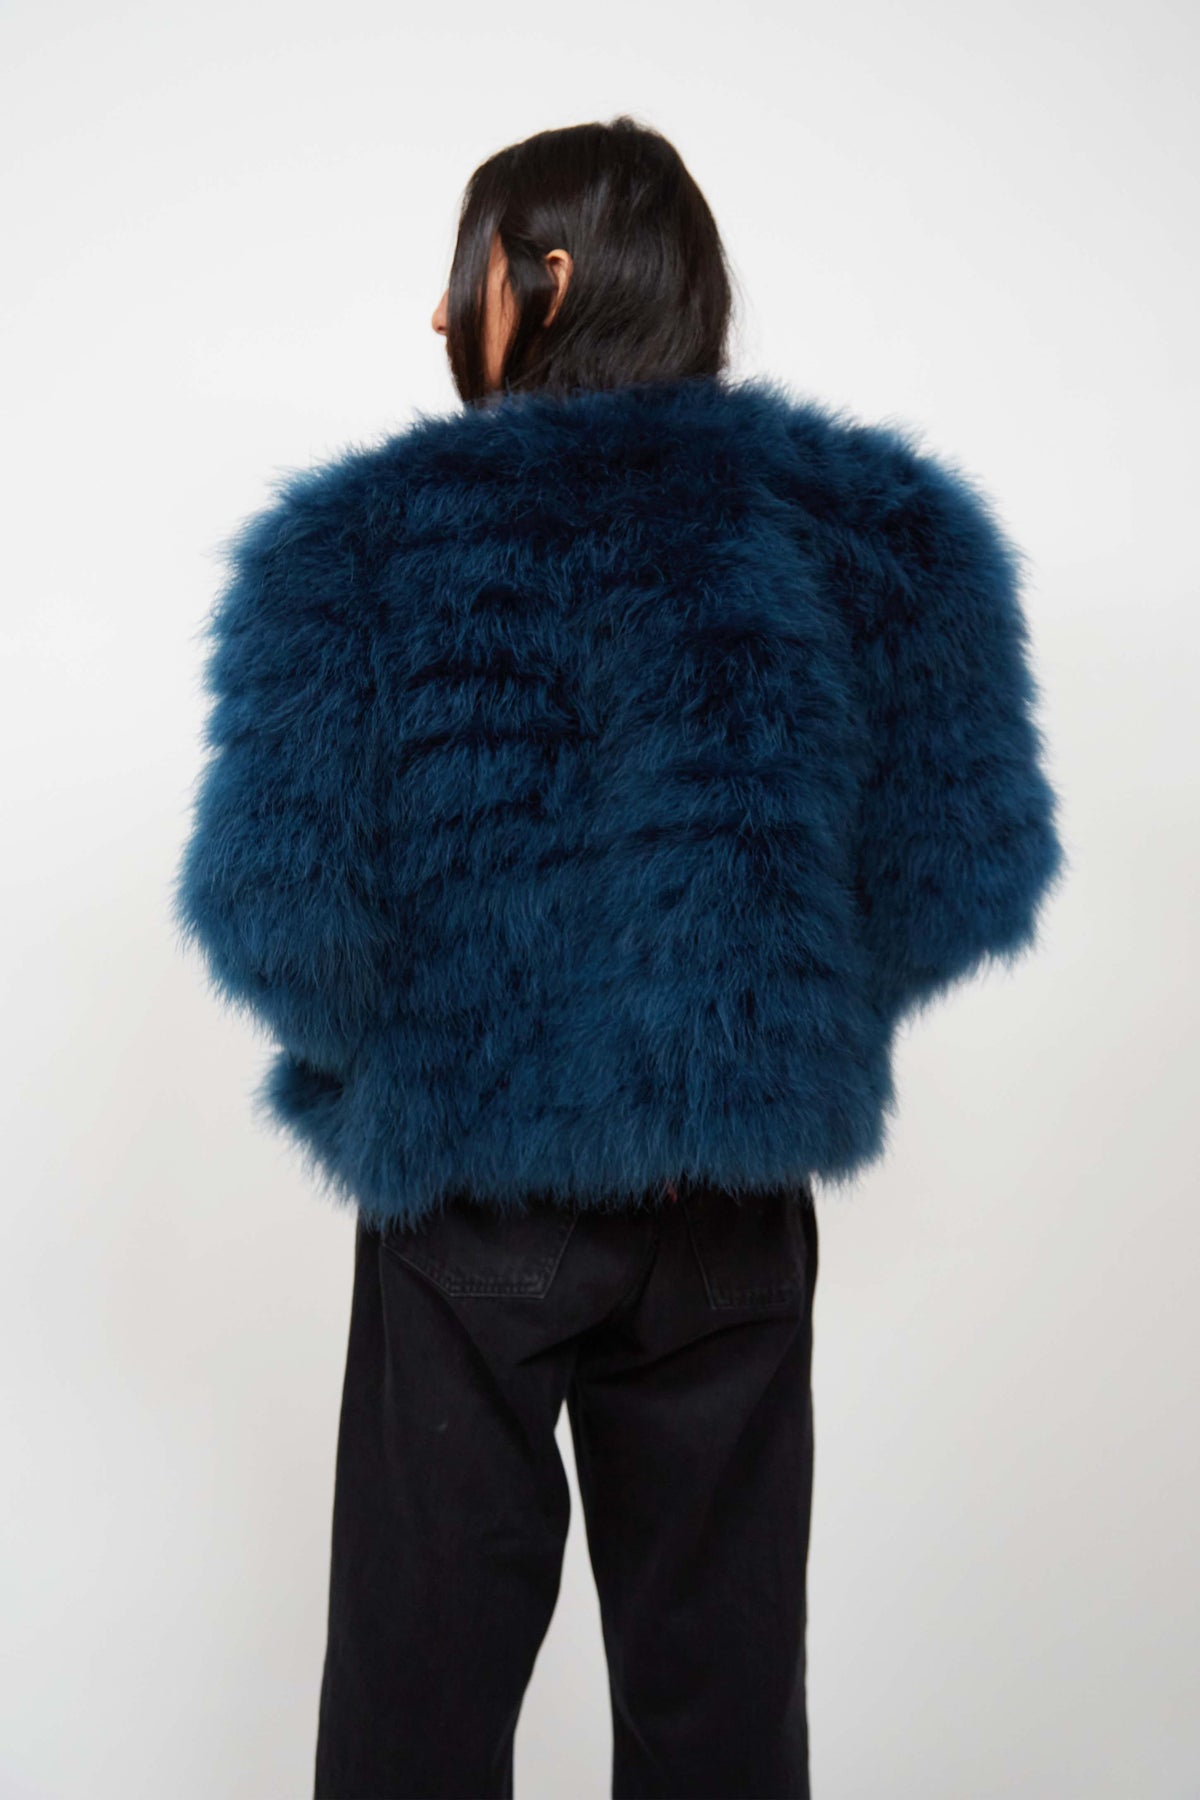 Yves Saint Laurent fur jacket